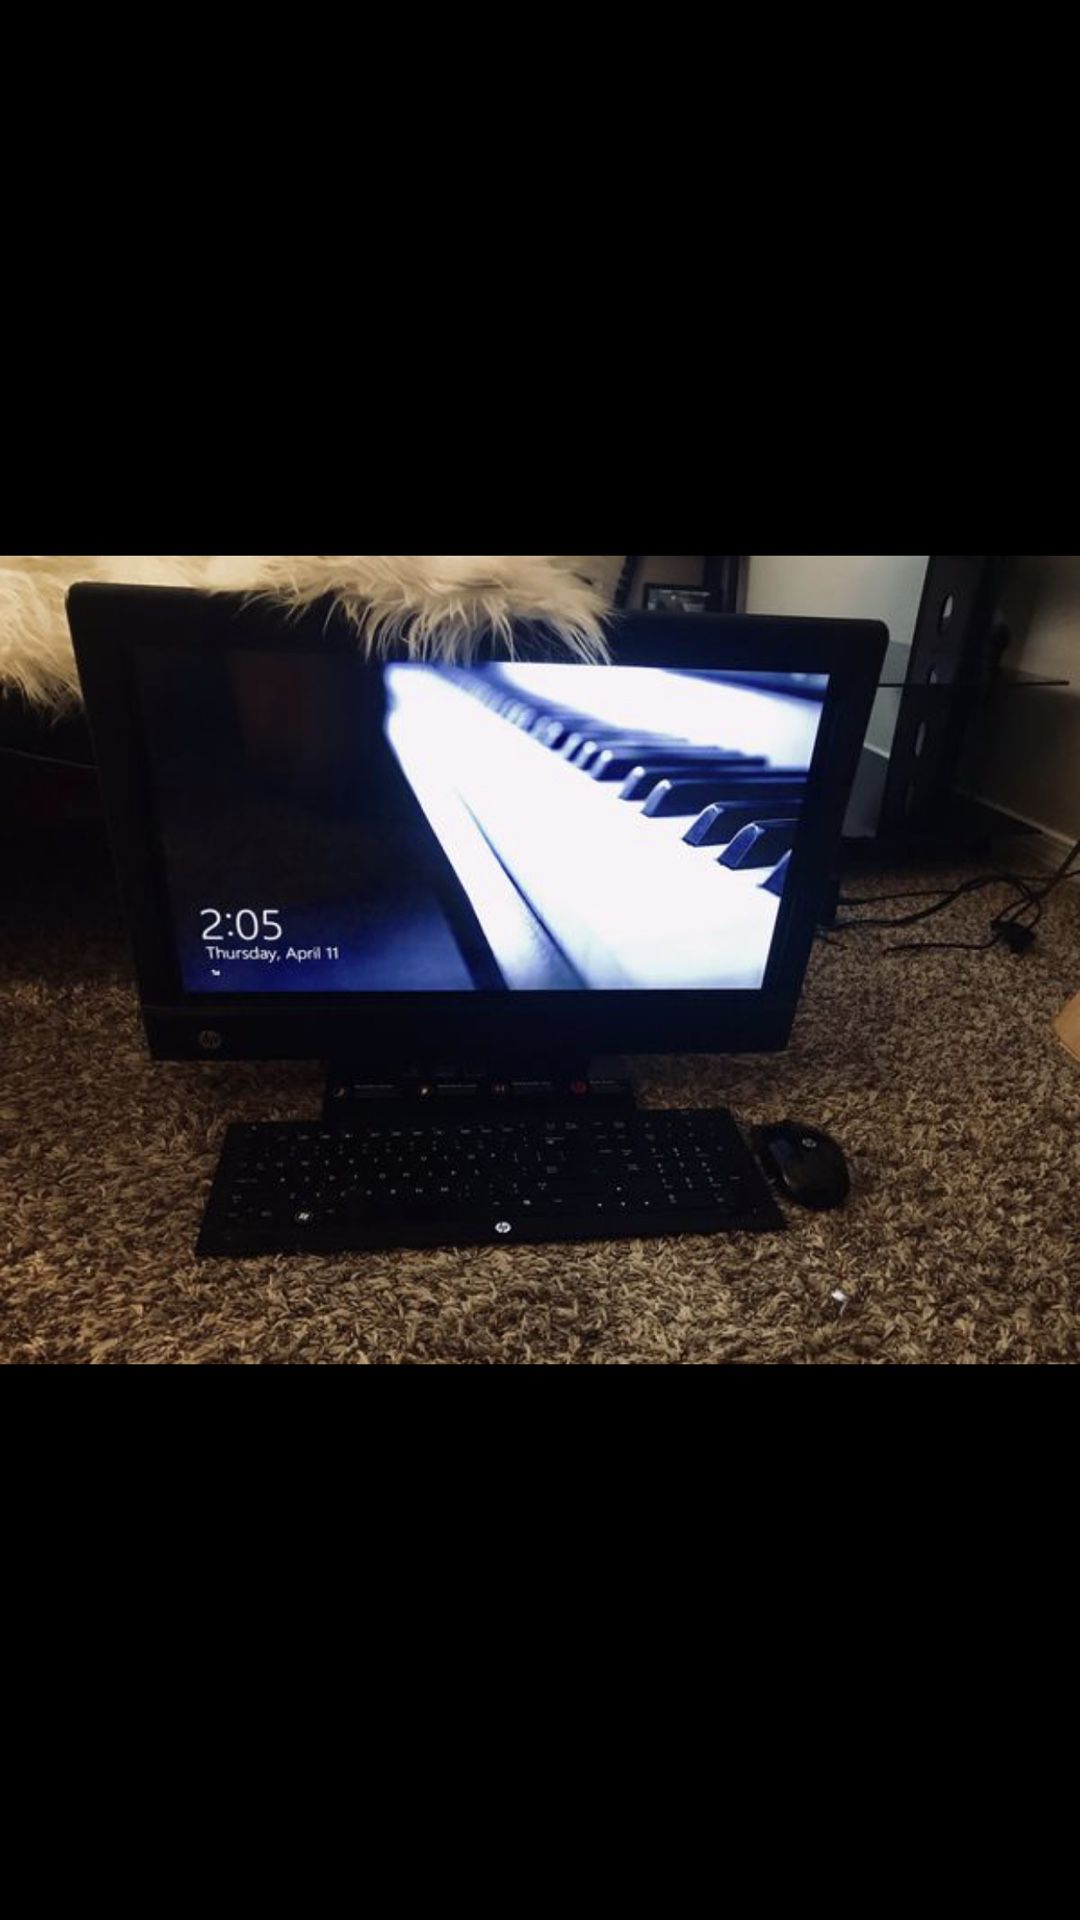 HP desktop computer with beats audio